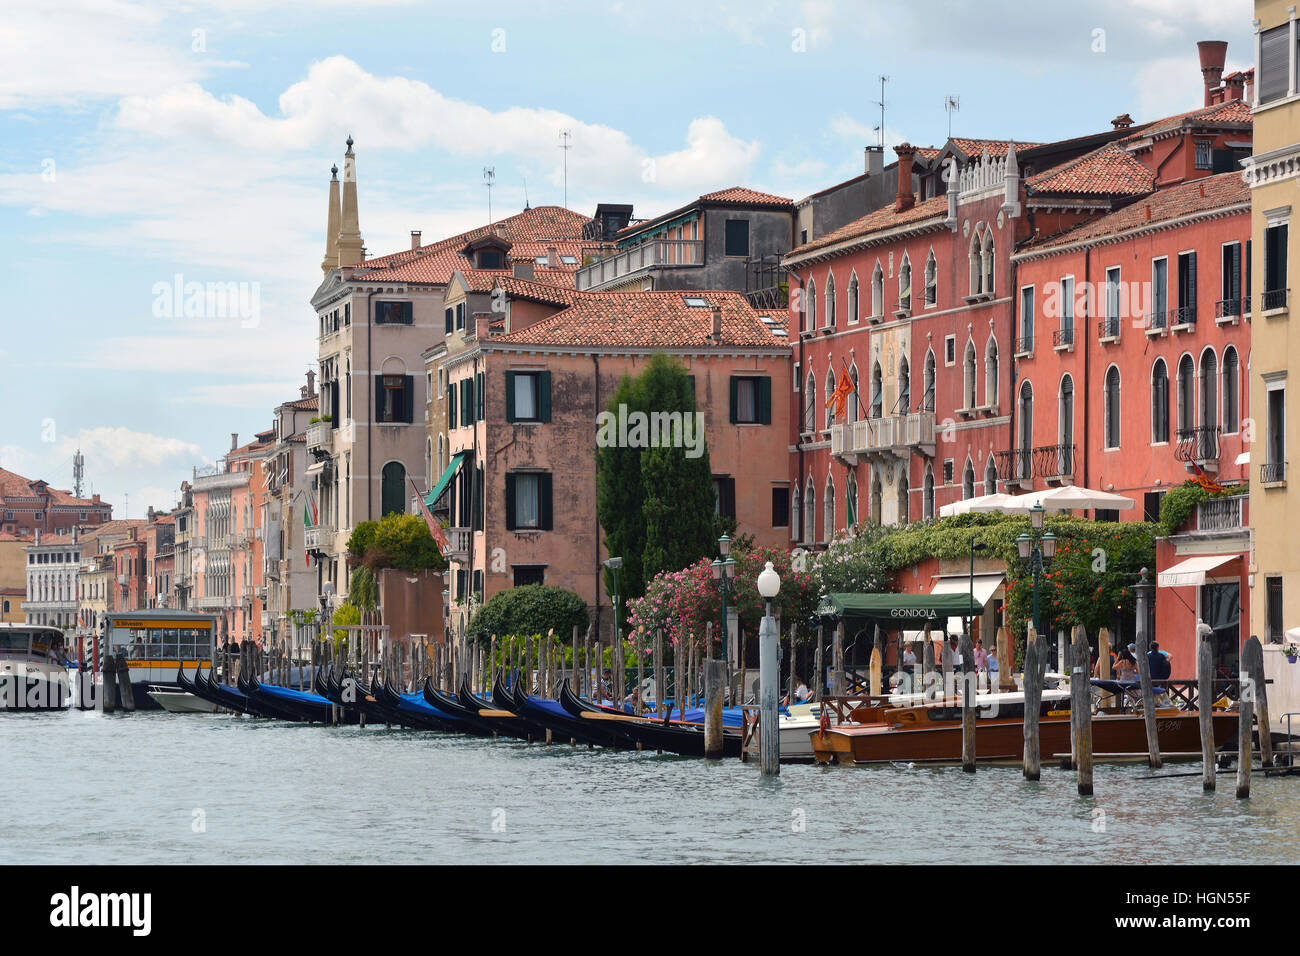 Palais historique dans le Grand Canal de Venise en Italie. Banque D'Images